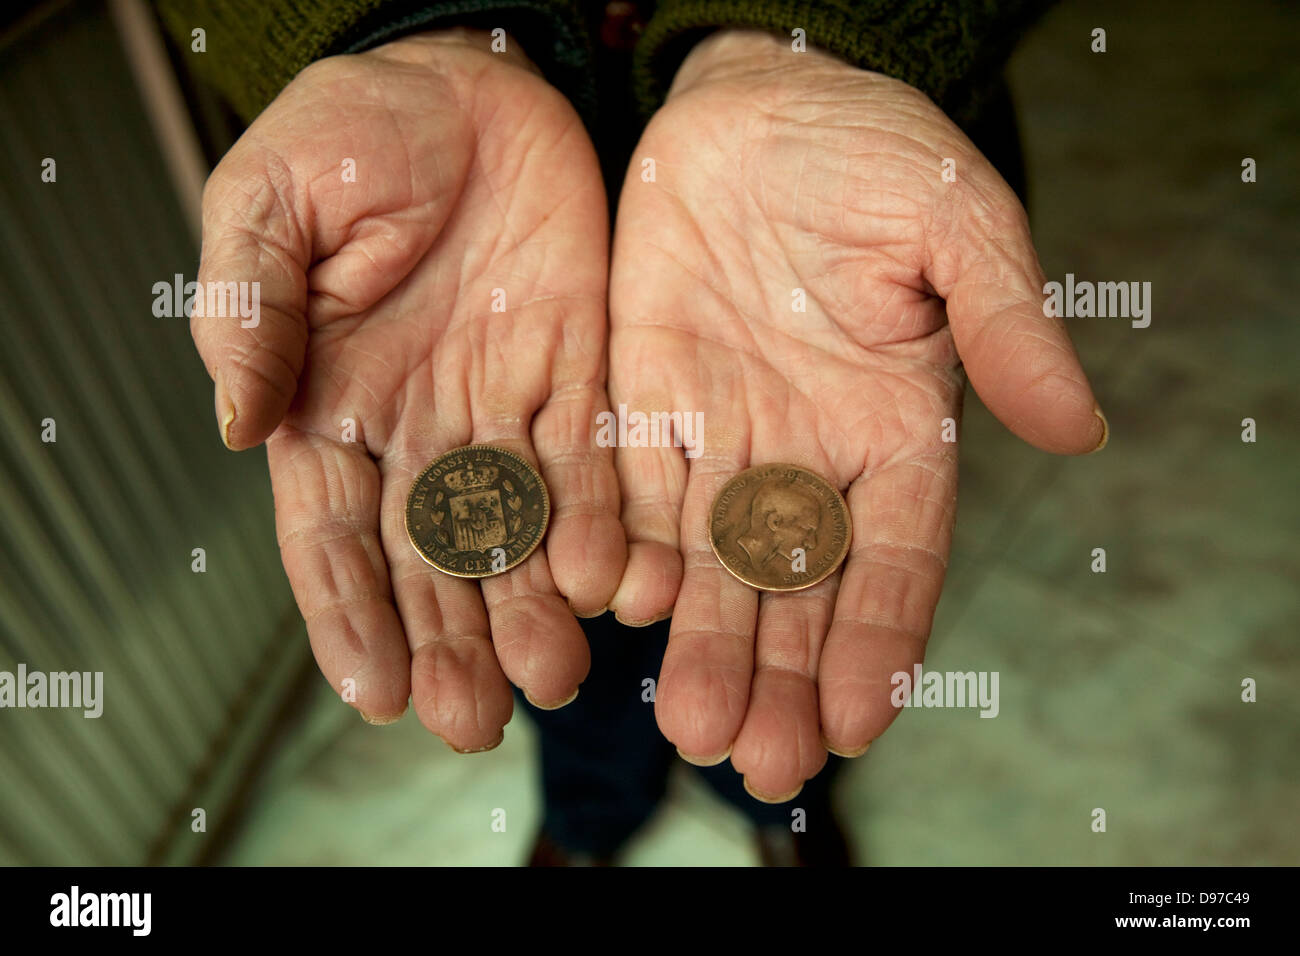 Easter in Campo de Calatrava. Monedas utilizadas en el juego de 'Las caras' Stock Photo